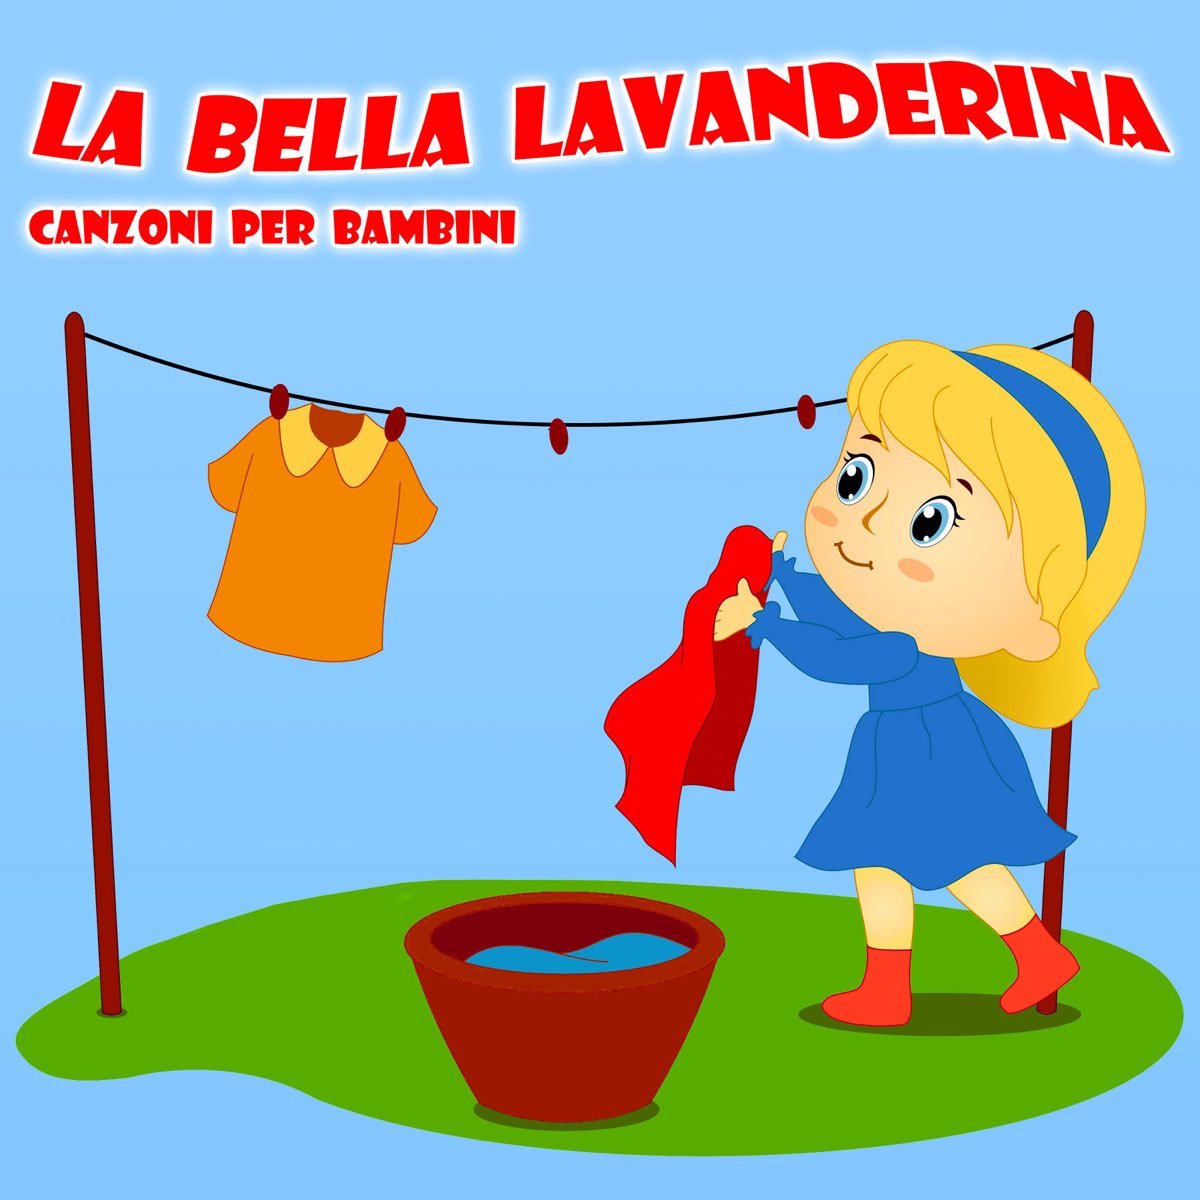 La Bella Lavanderina - Single - Album by Discoteca Per Bambini - Apple Music